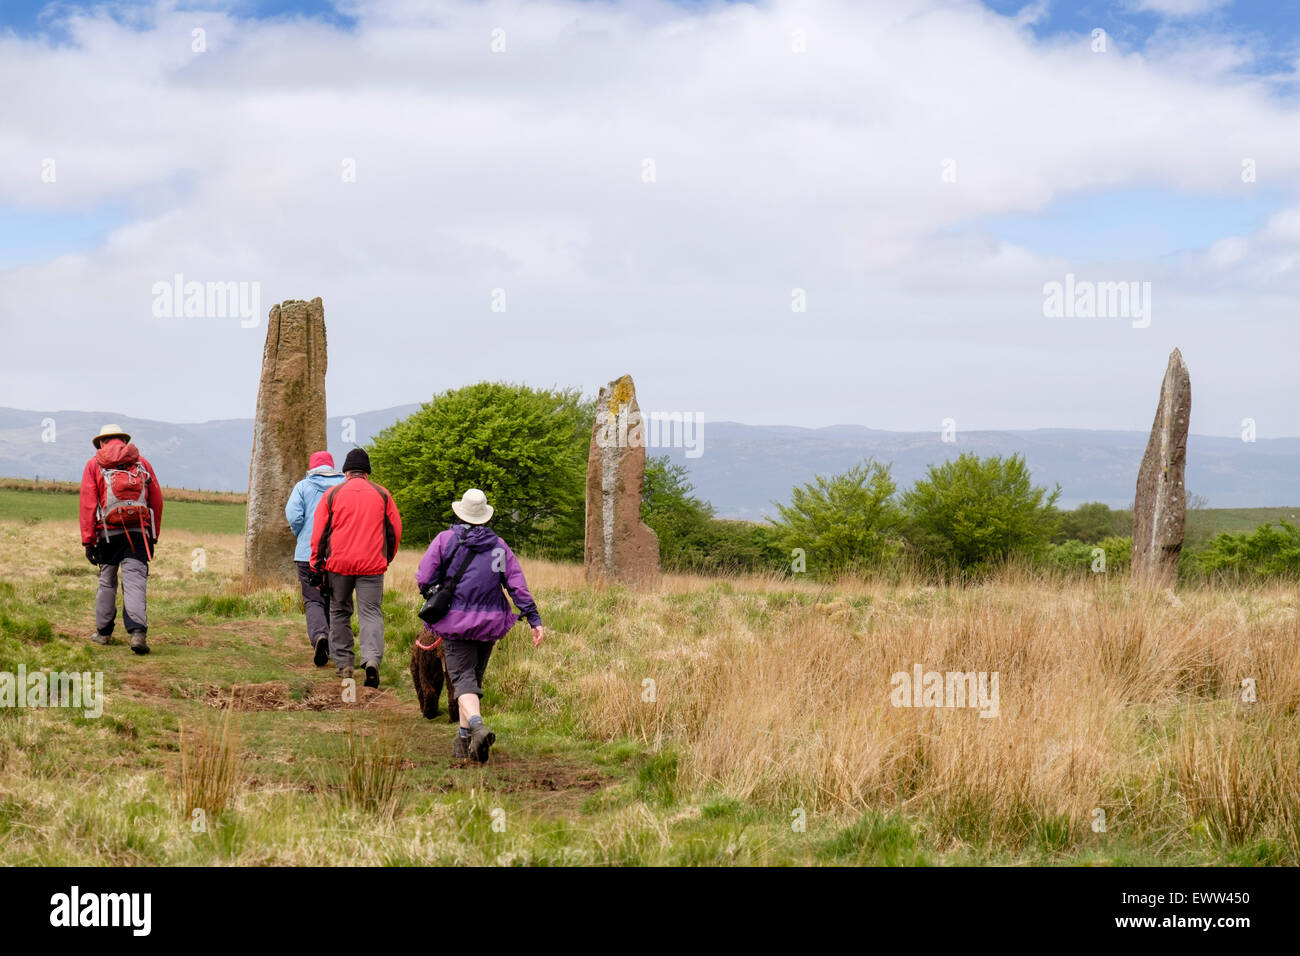 Visiteurs en pierres à Machrie Moor pierre cirles sur l'île d'Arran, North Ayrshire, Strathclyde, Écosse, Royaume-Uni, Angleterre Banque D'Images